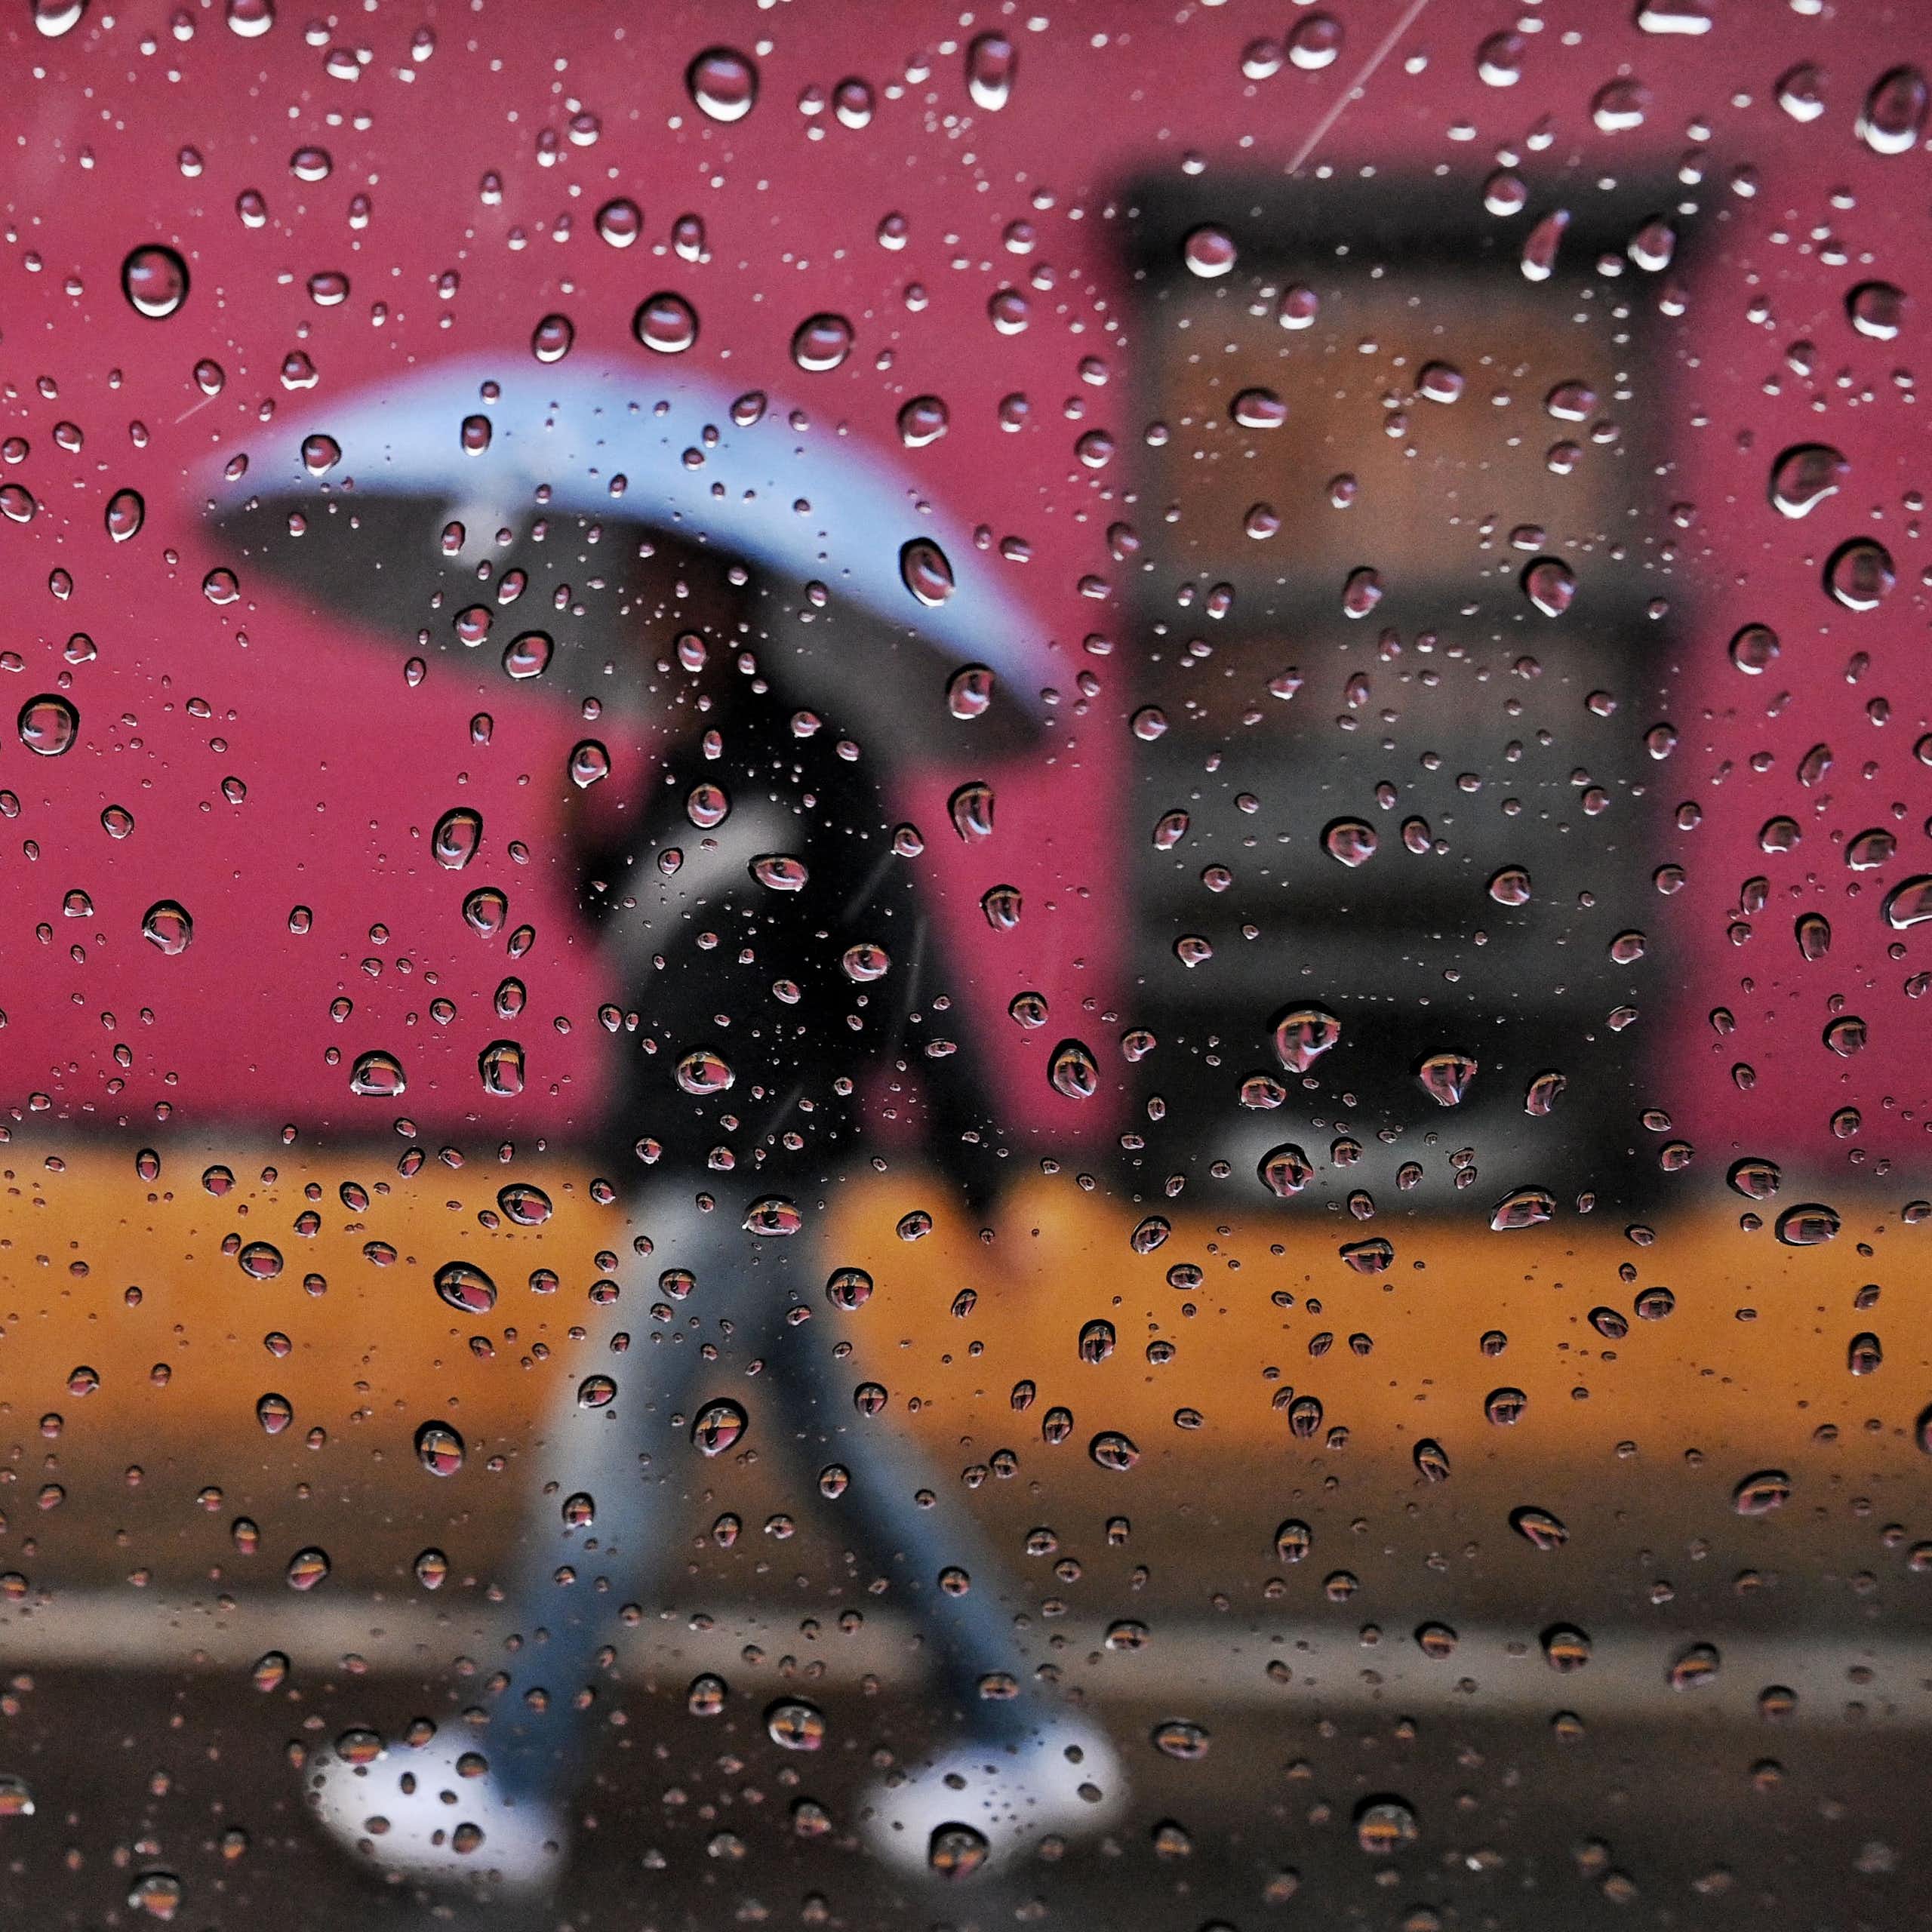 Une personne marche sous la pluie devant des bâtiments aux couleurs vives avec un parapluie. La photo est prise à travers une fenêtre avec des gouttes de pluie sur la vitre.